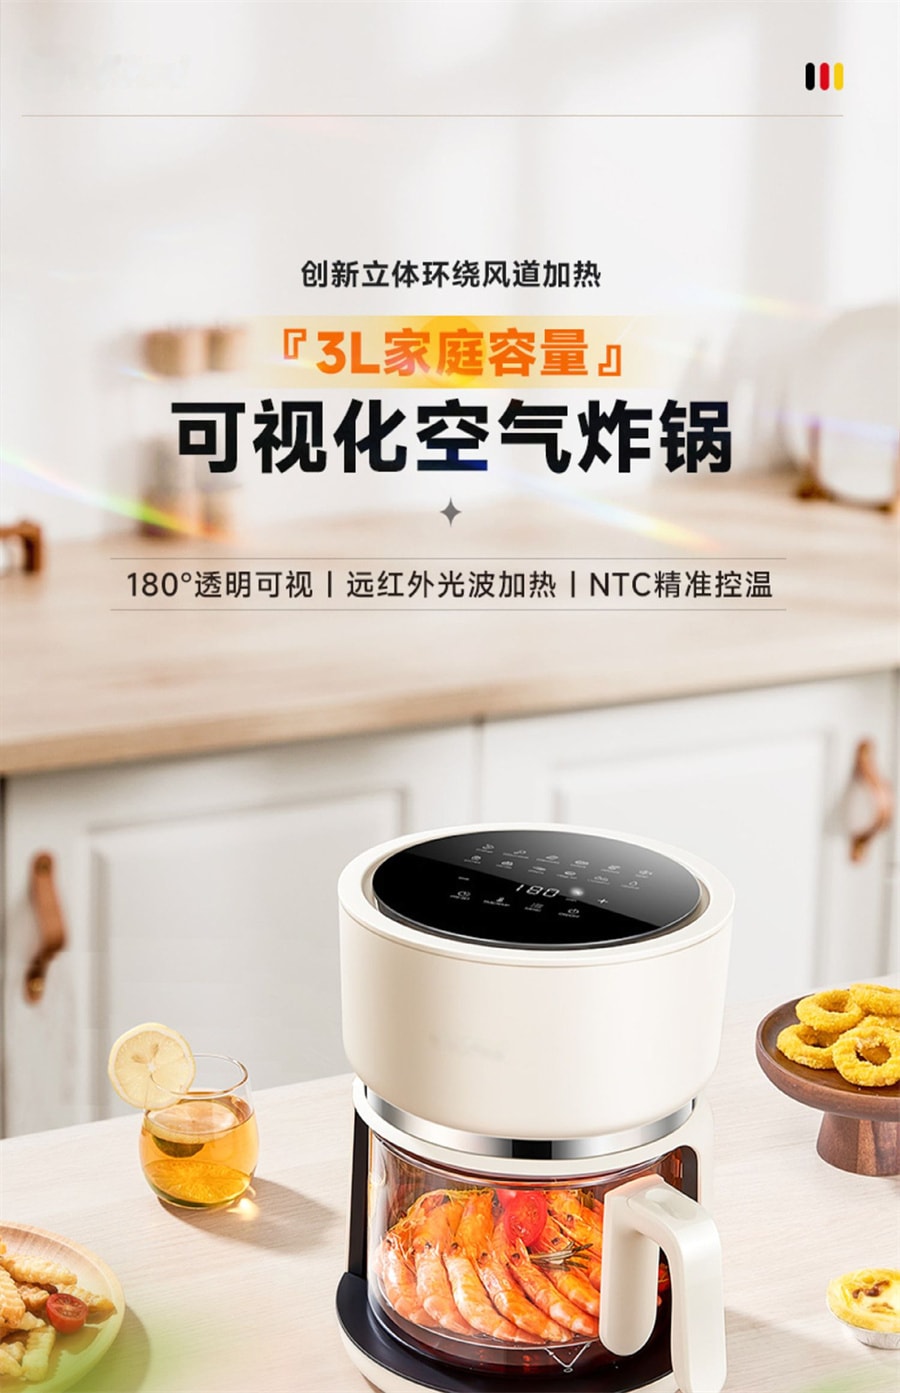 【中国直邮】梵洛  110V可视空气炸锅多功能家用烤箱智能烤面包鸡机   薄荷绿